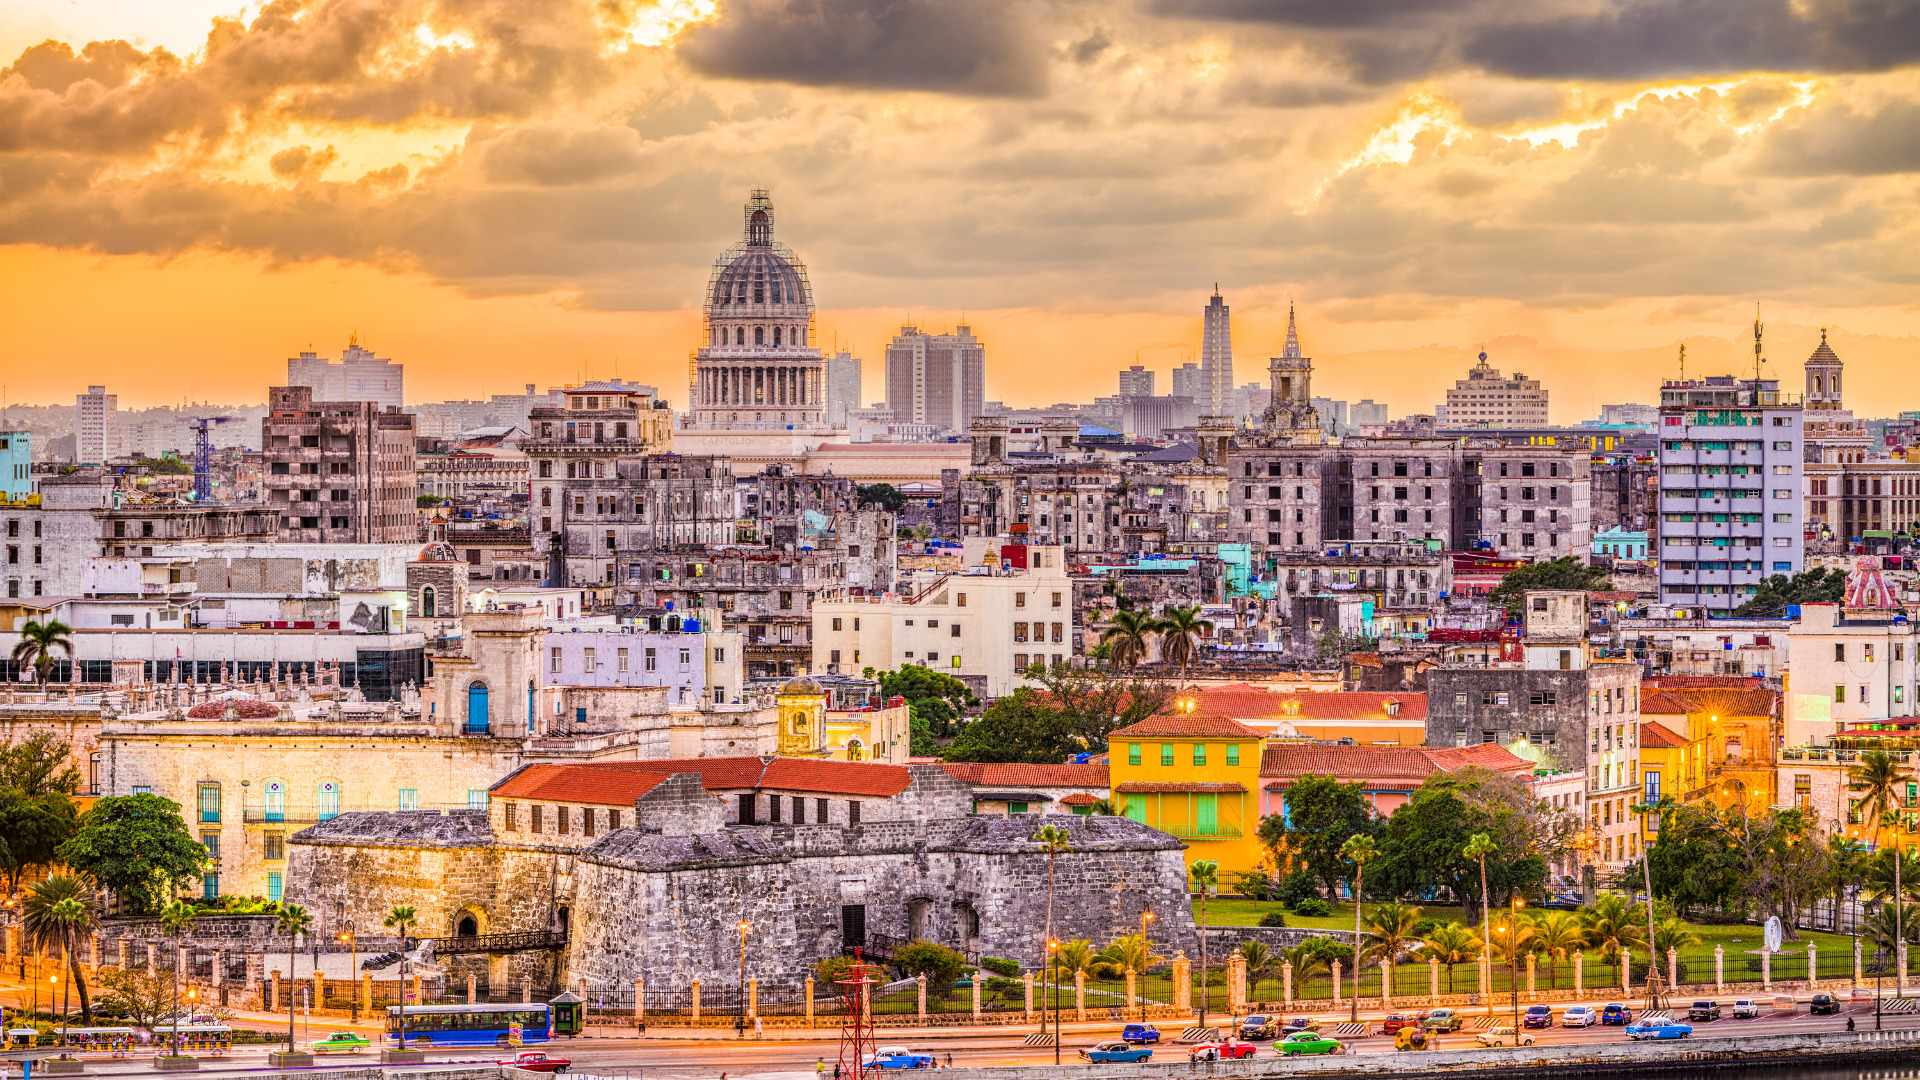 Cuba: Post-Castro scenarios